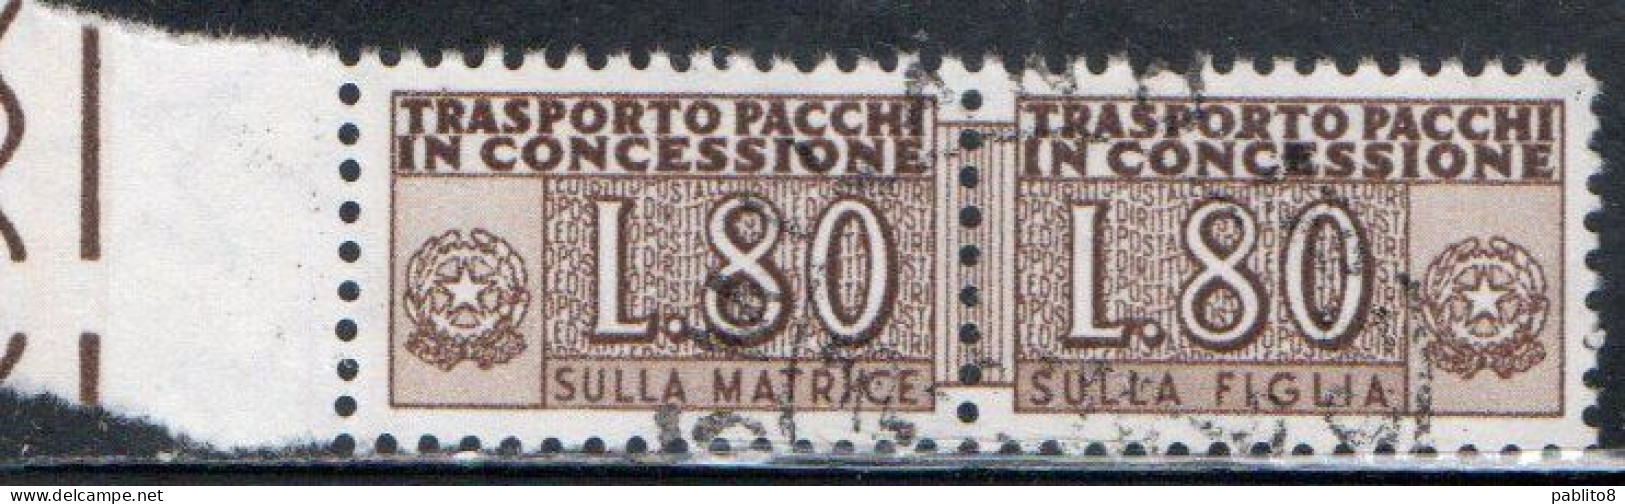 ITALIA REPUBBLICA ITALY REPUBLIC 1955 1981 PACCHI IN CONCESSIONE PARCEL POST STELLE STARS 1960 LIRE 80 USATO USED OBLIT - Colis-concession